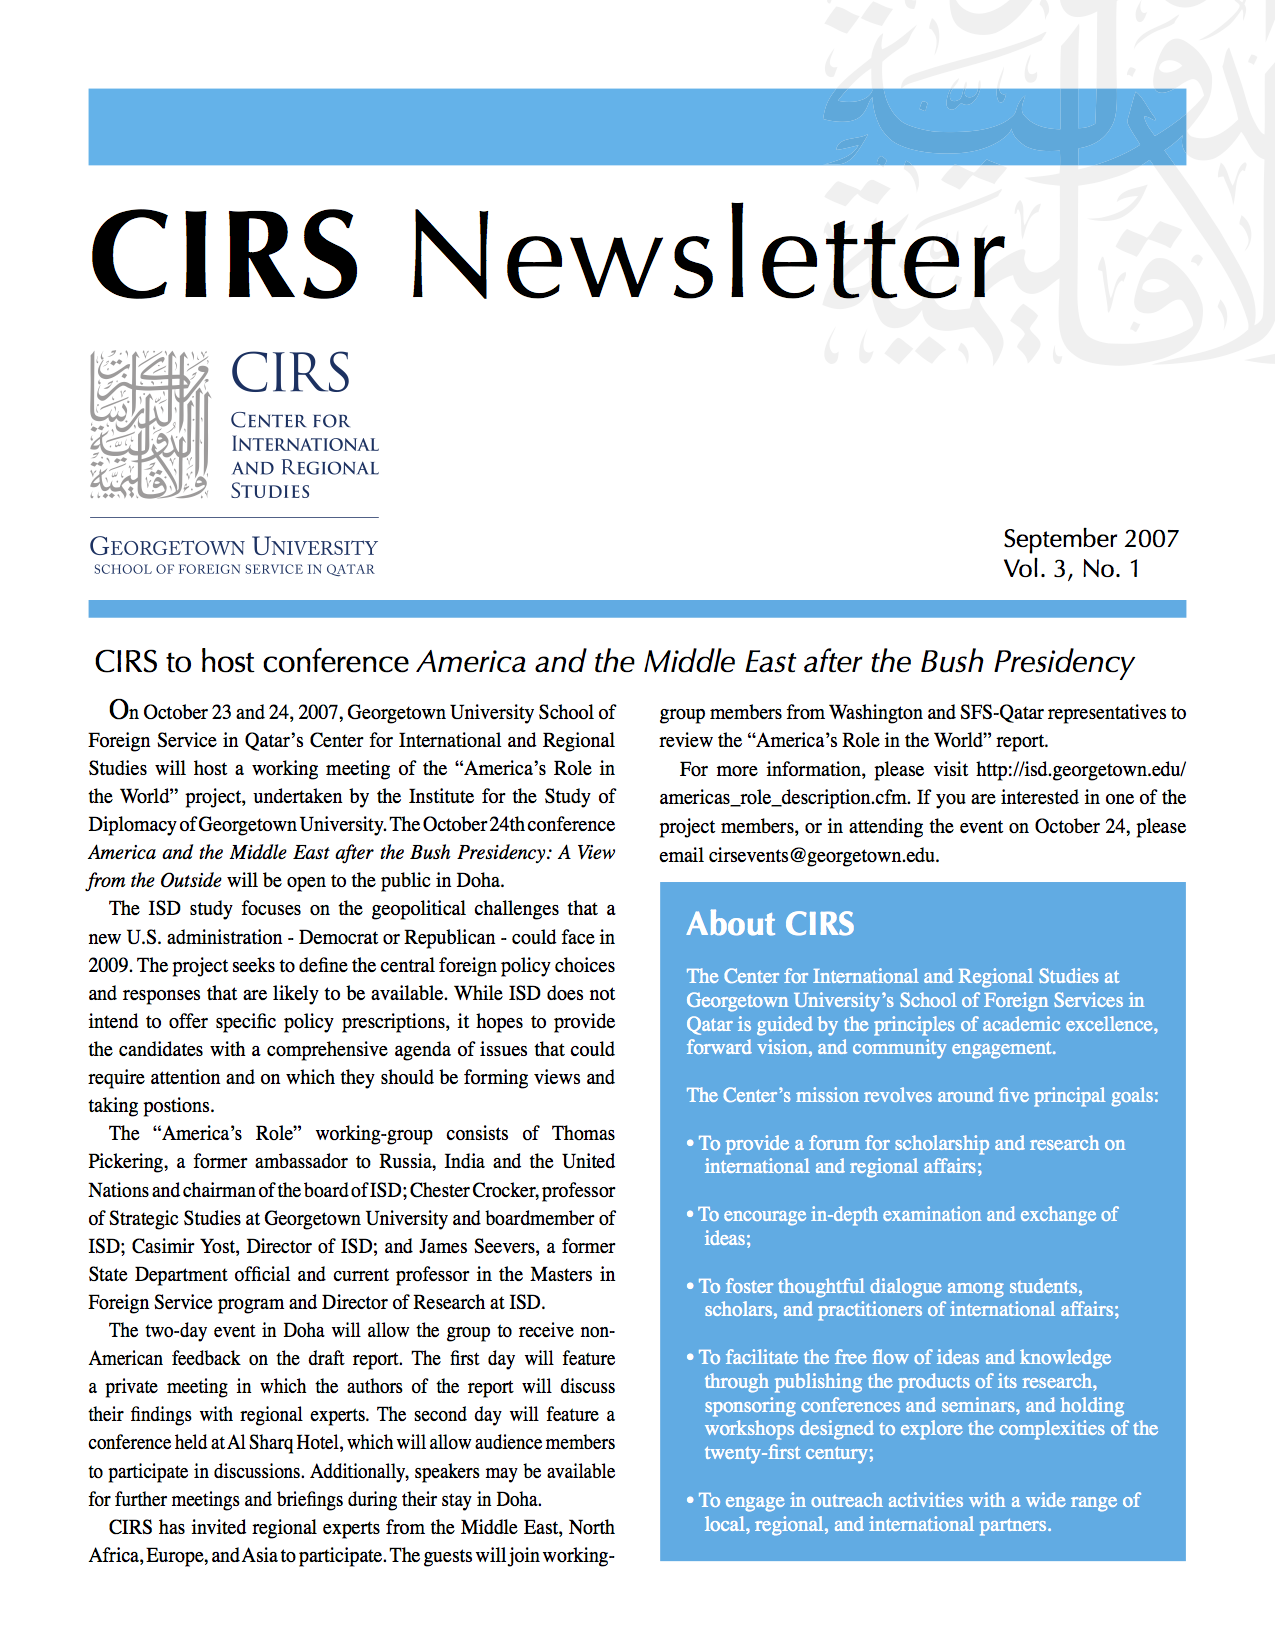 CIRS Newsletter No. 01